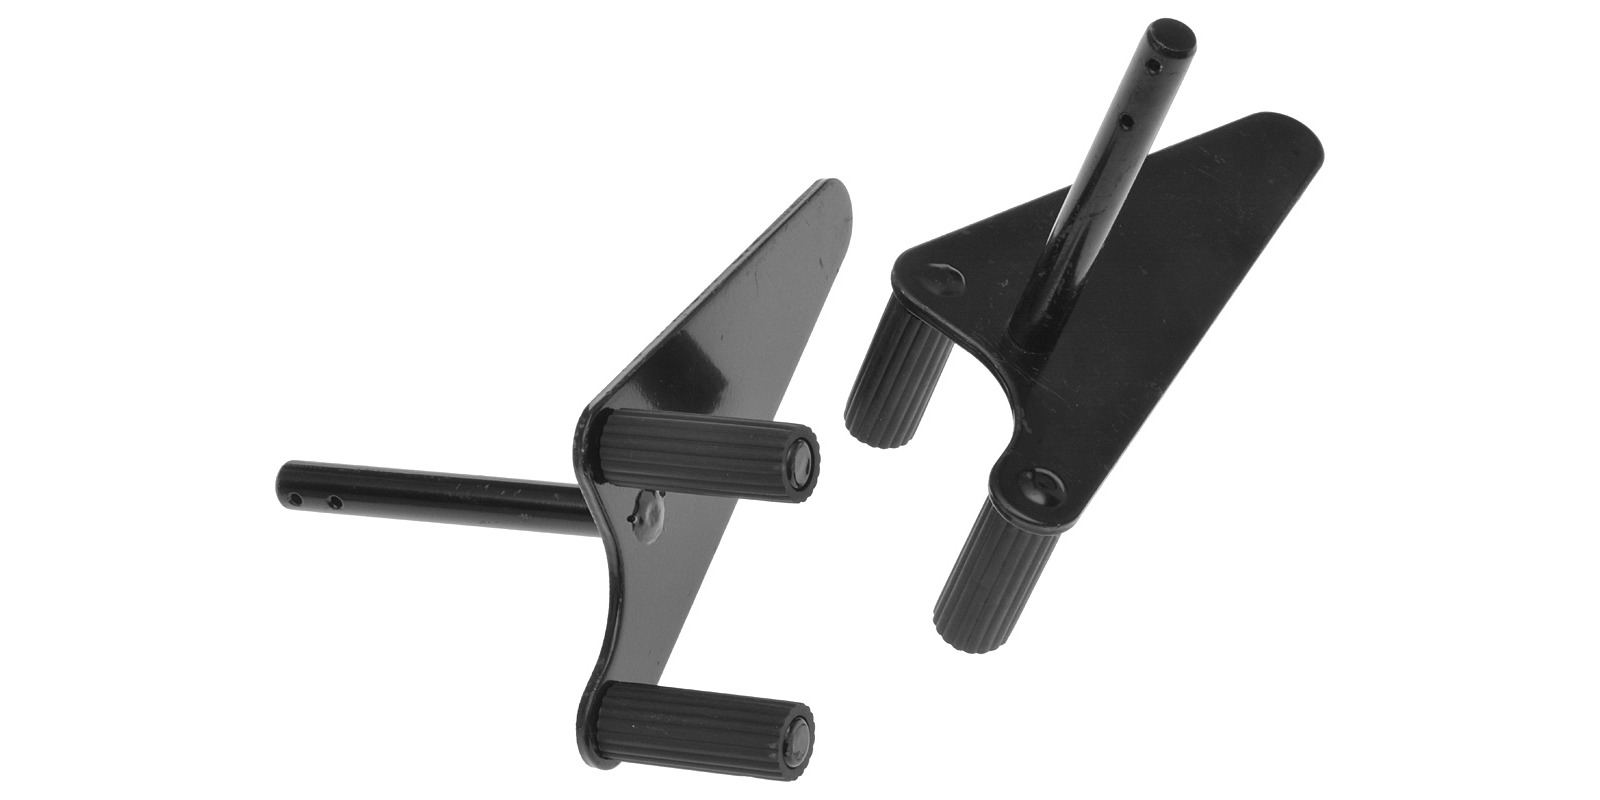 Obrázek produktu náhradní adaptéry pro stojany M002-45, Q-TECH (pár, černé) FR03